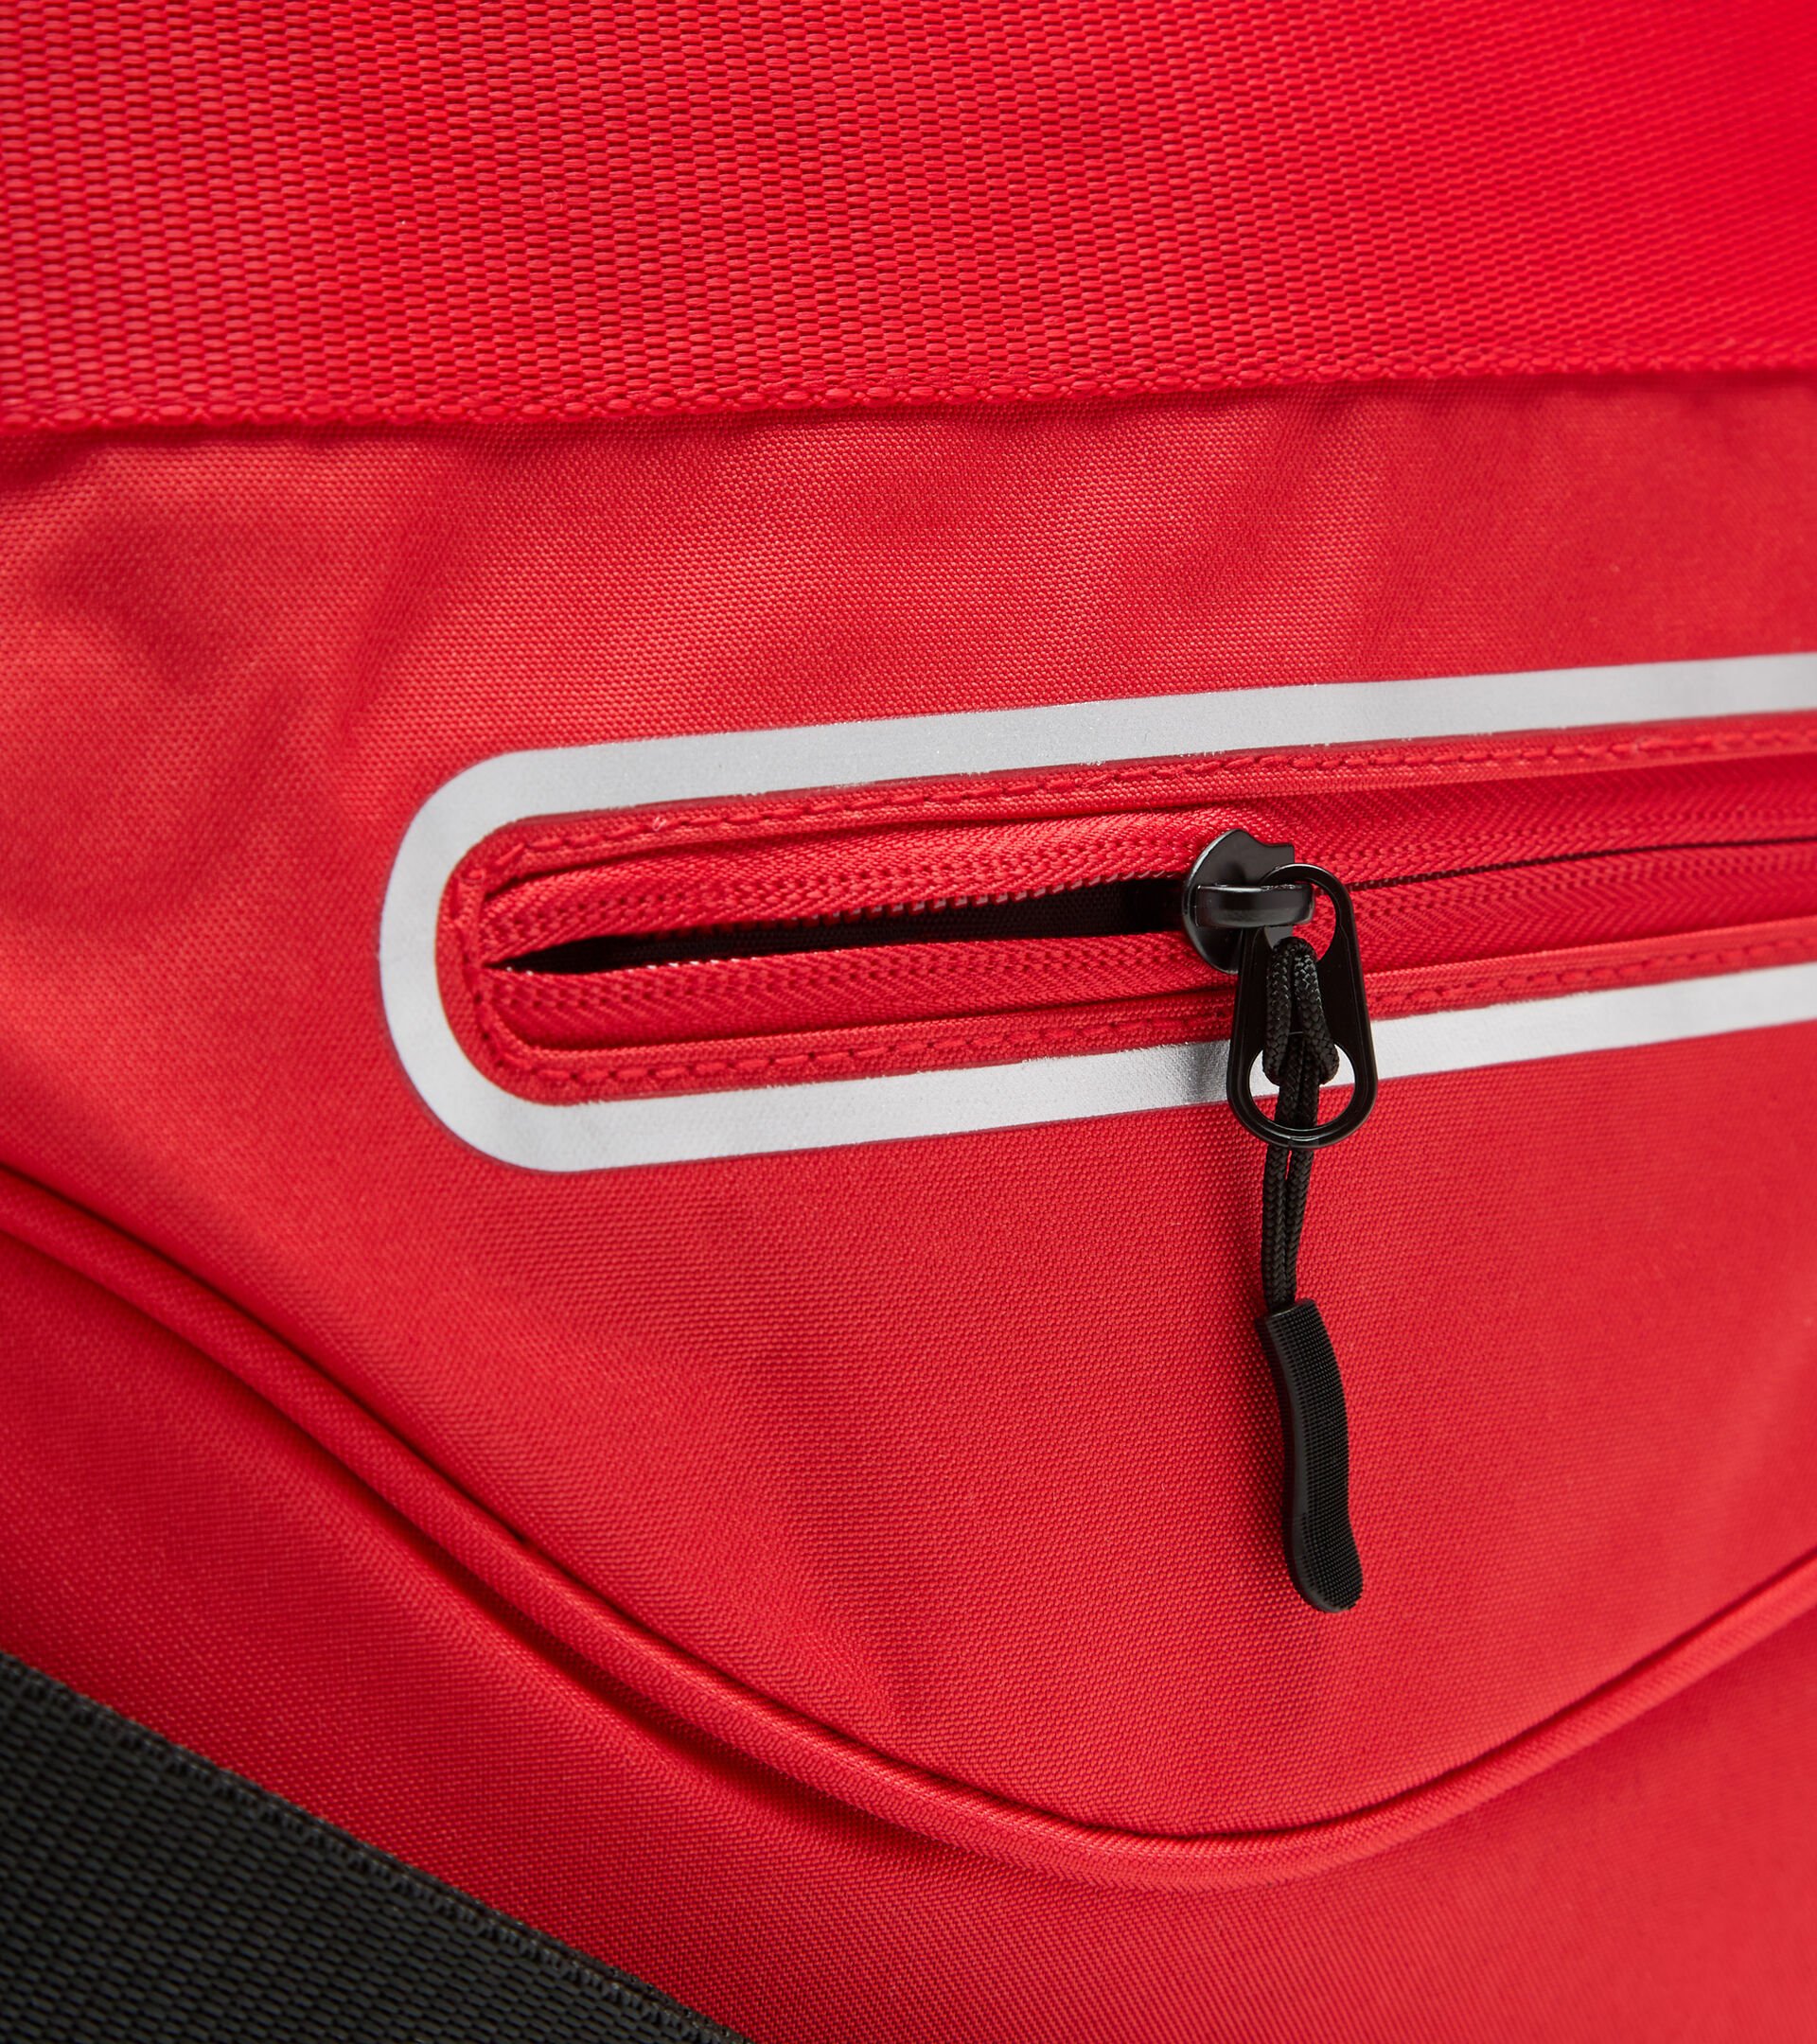 Training bag BAG TENNIS TOMATO RED - Diadora